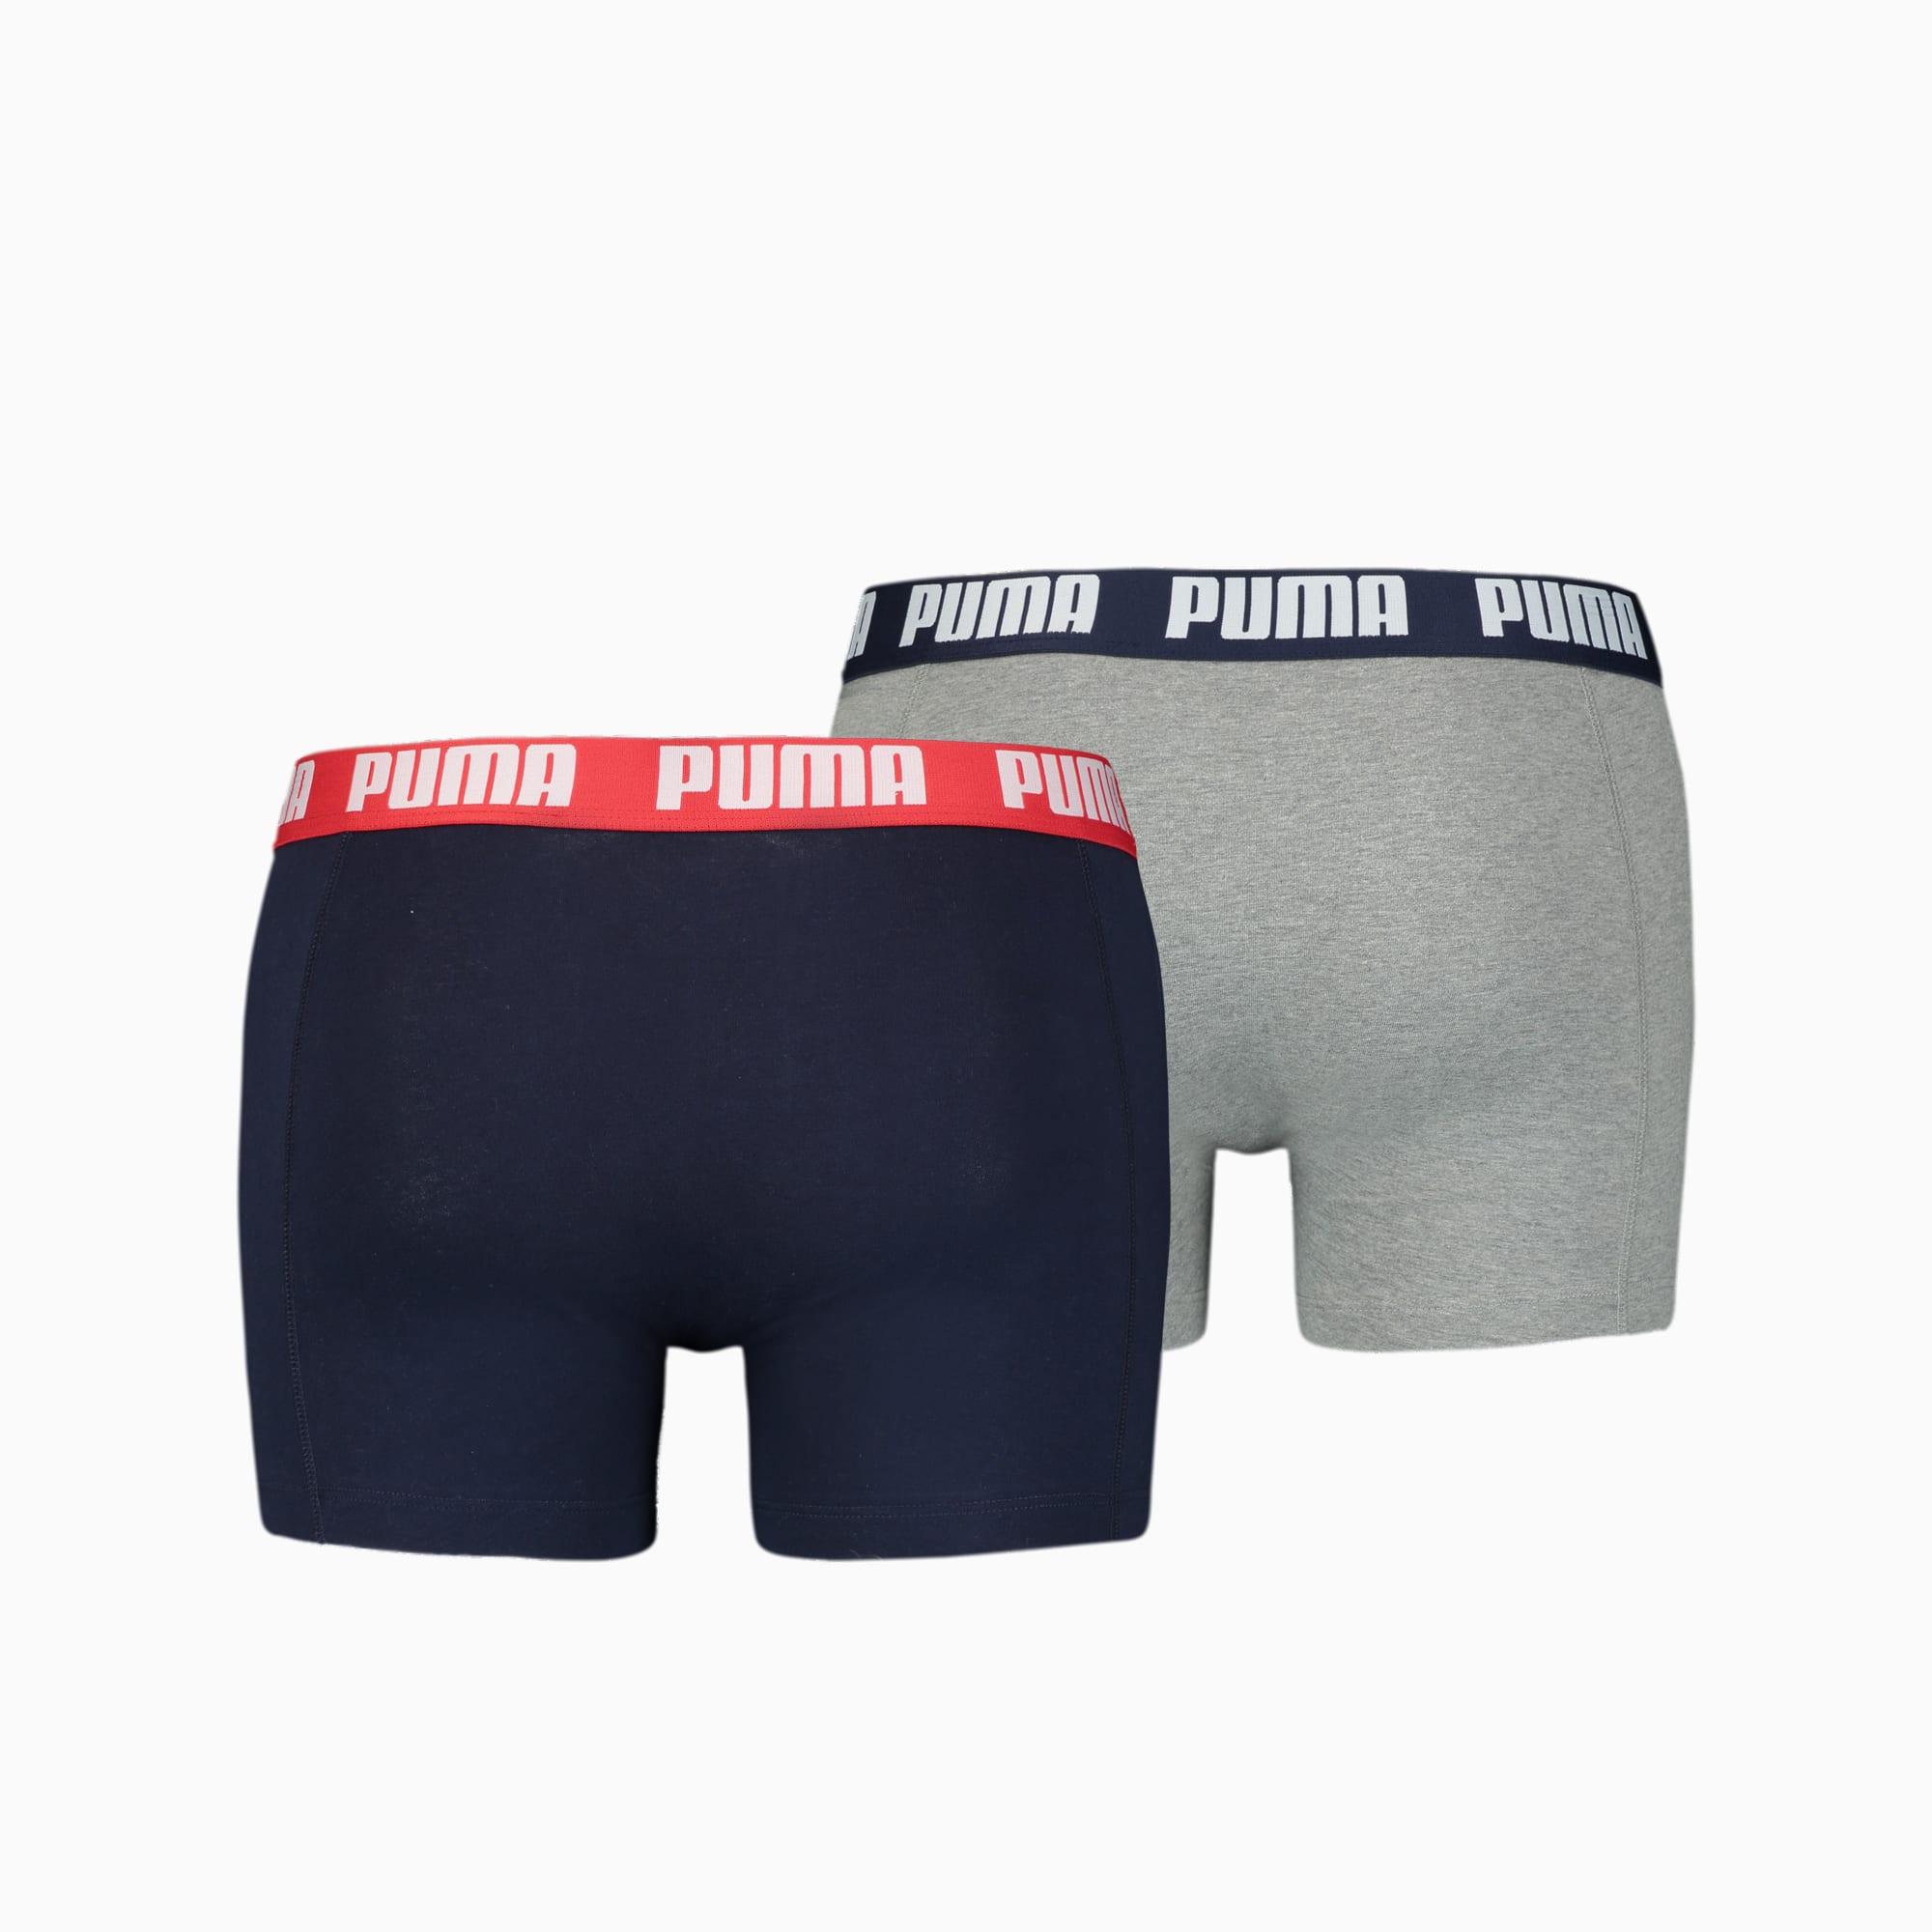 PUMA Basic Boxershorts Herren 2er-Pack, Mit Grau Melange, Grau/Blau, Größe: S, Kleidung